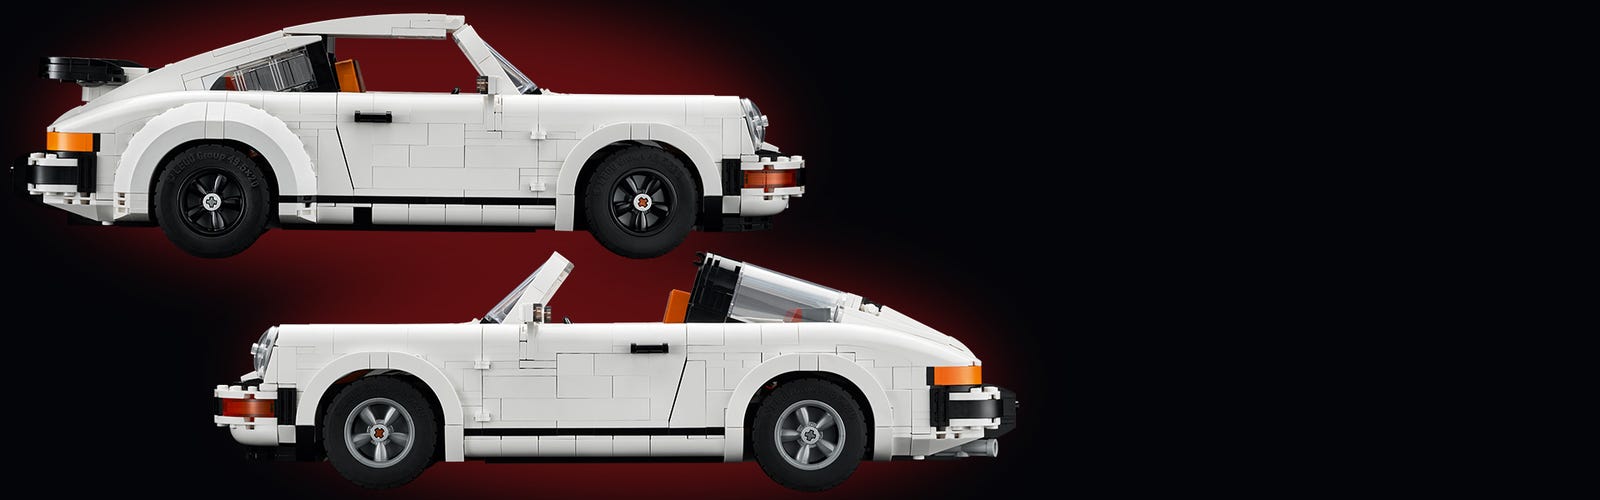  LEGO Icons Porsche 911 10295 Building Set, Collectible